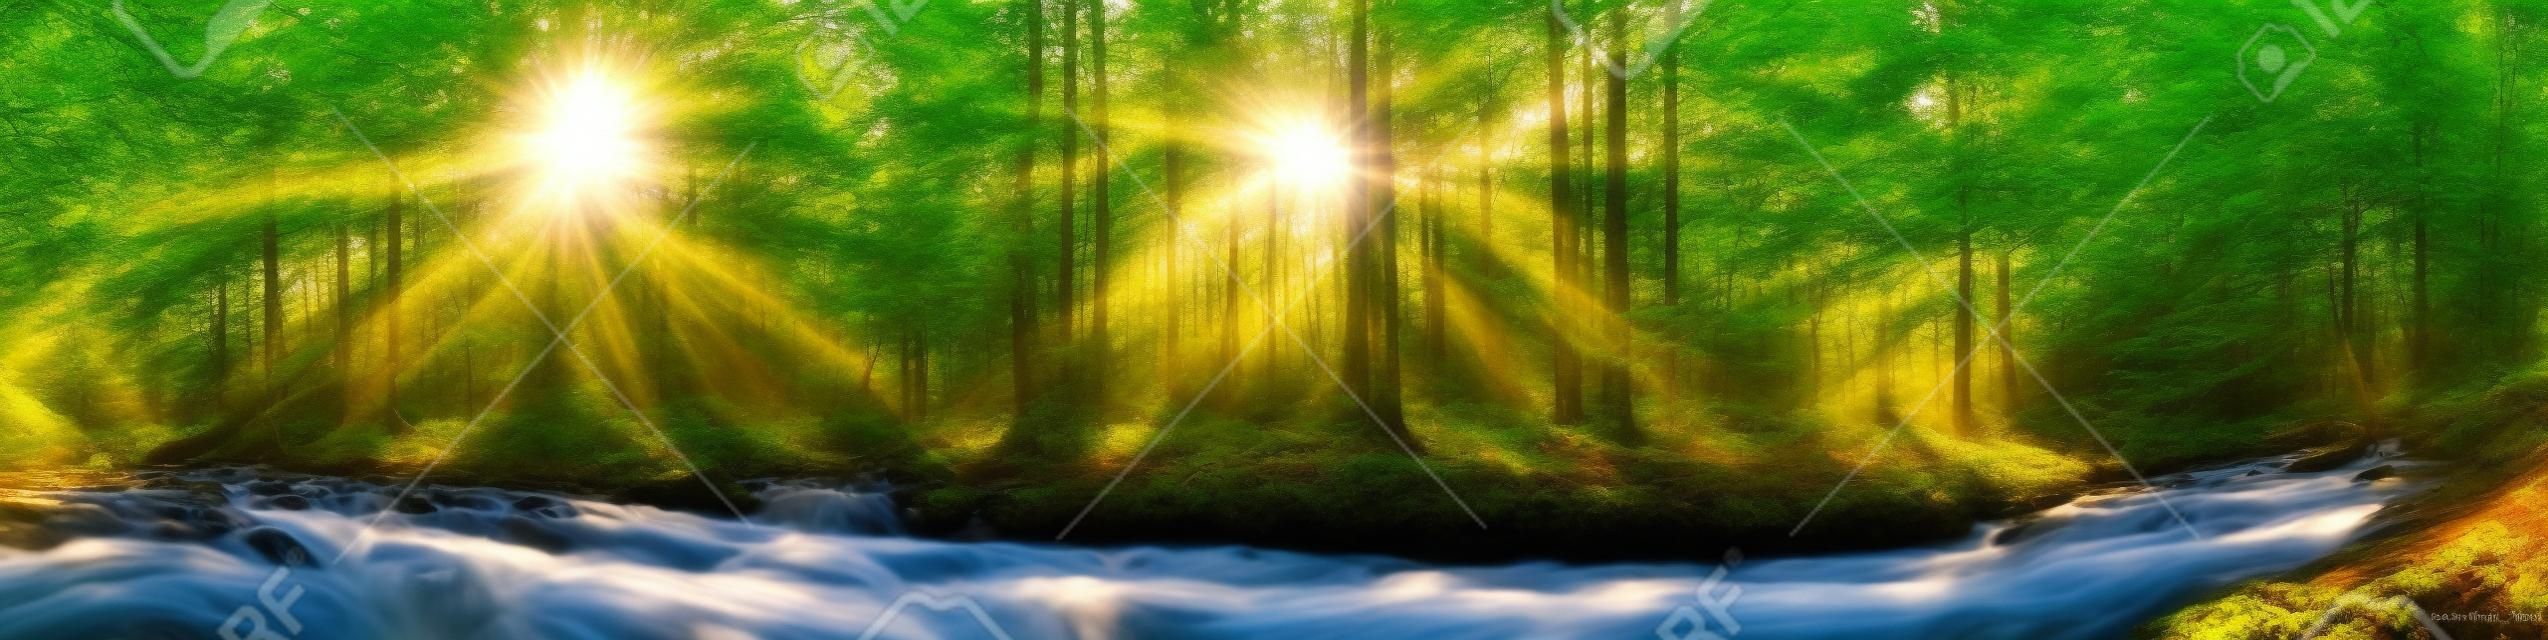 木、川と太陽と美しい森のパノラマ